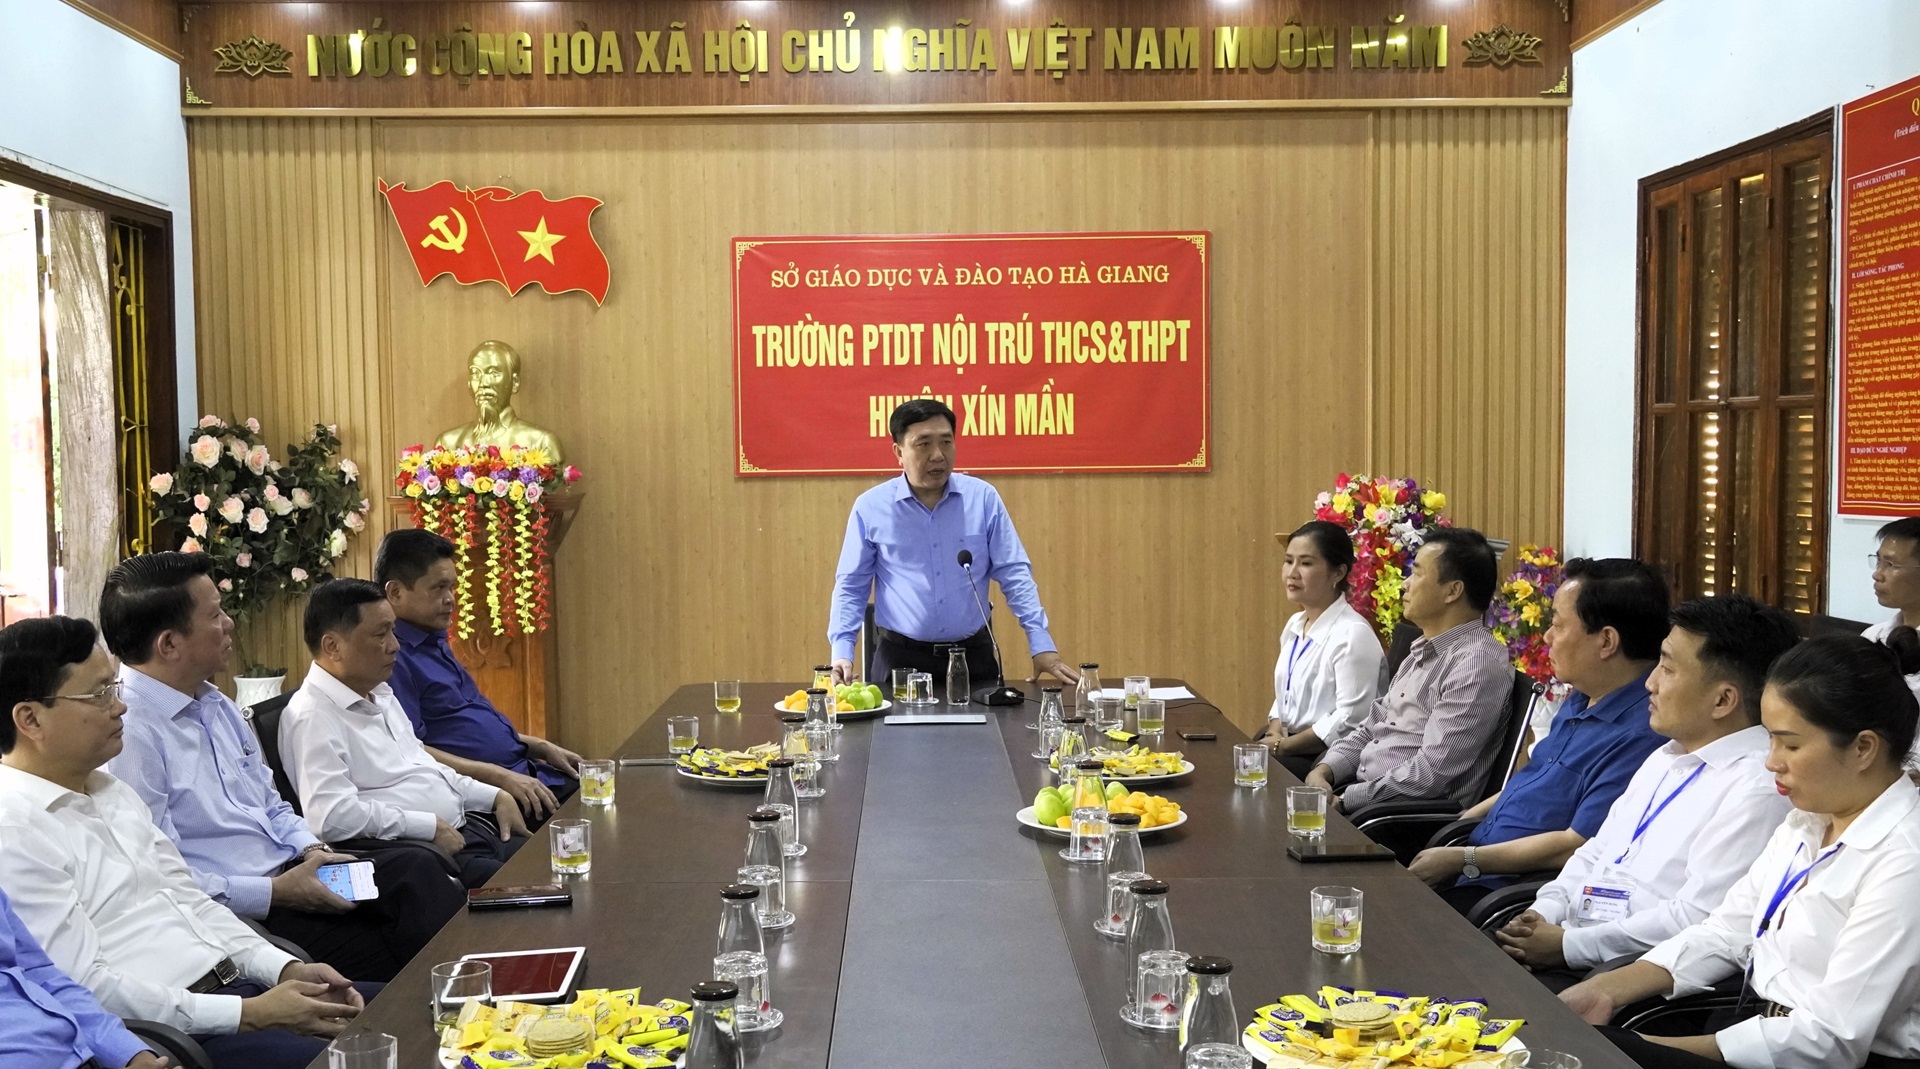 Quyền Bí thư Tỉnh ủy Nguyễn Mạnh Dũng thăm, làm việc với Trường PTDT nội trú THCS và THPT huyện Xín Mần